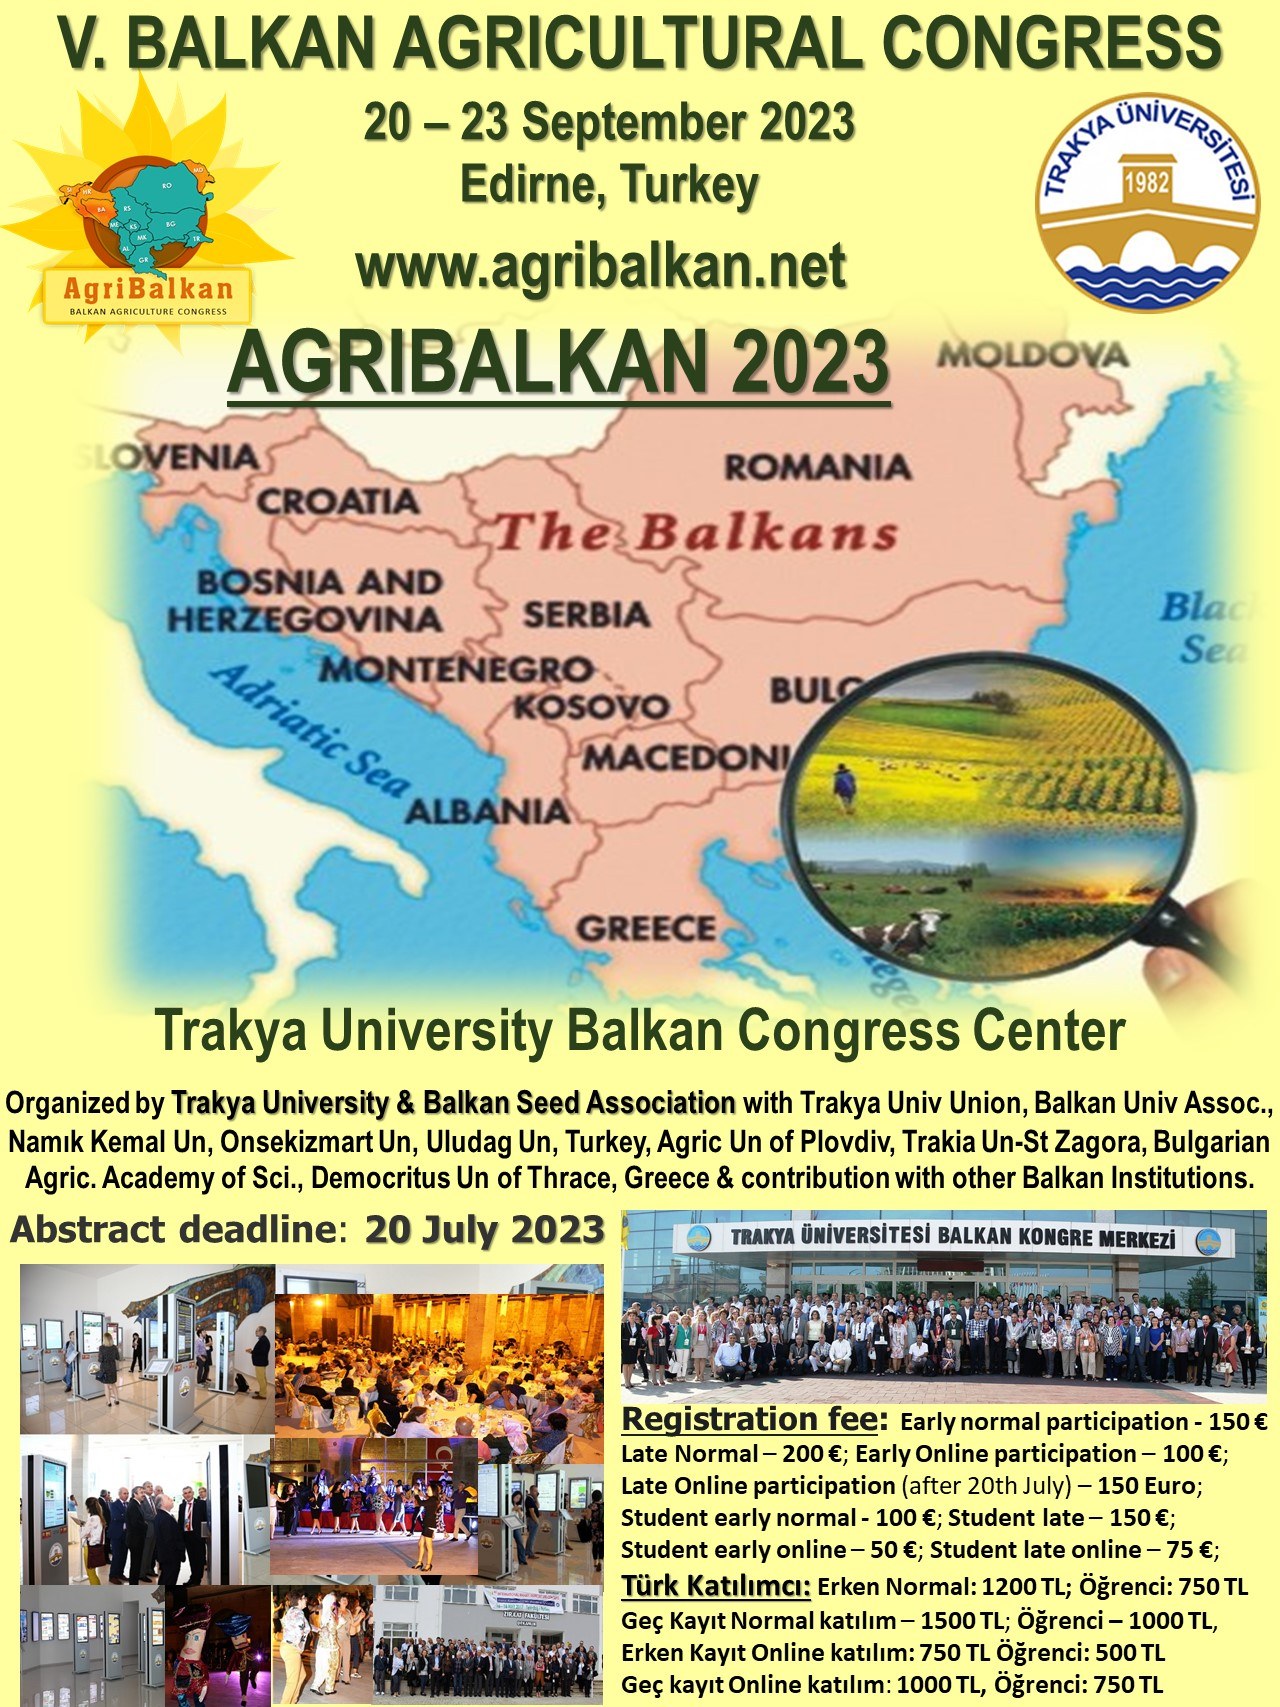 5-ти Балкански селскостопански конгрес - AGRIBALKAN 2023 